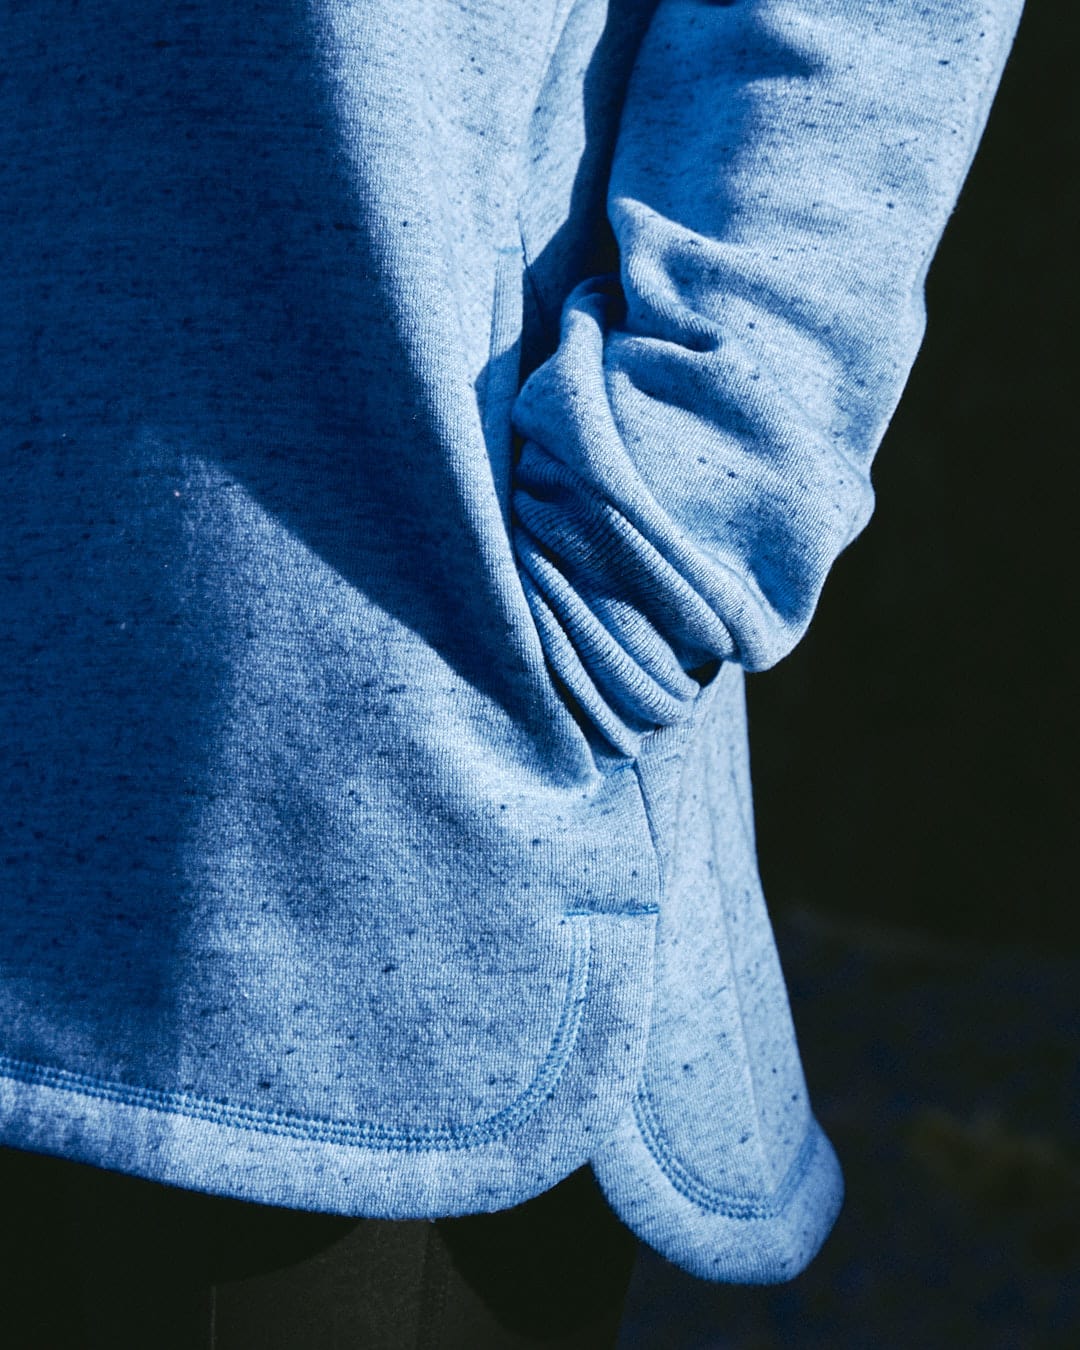 A chic woman wearing a Saltrock Harper - Womens Longline Pop Sweat - Light Blue sweatshirt, looking comfortable.